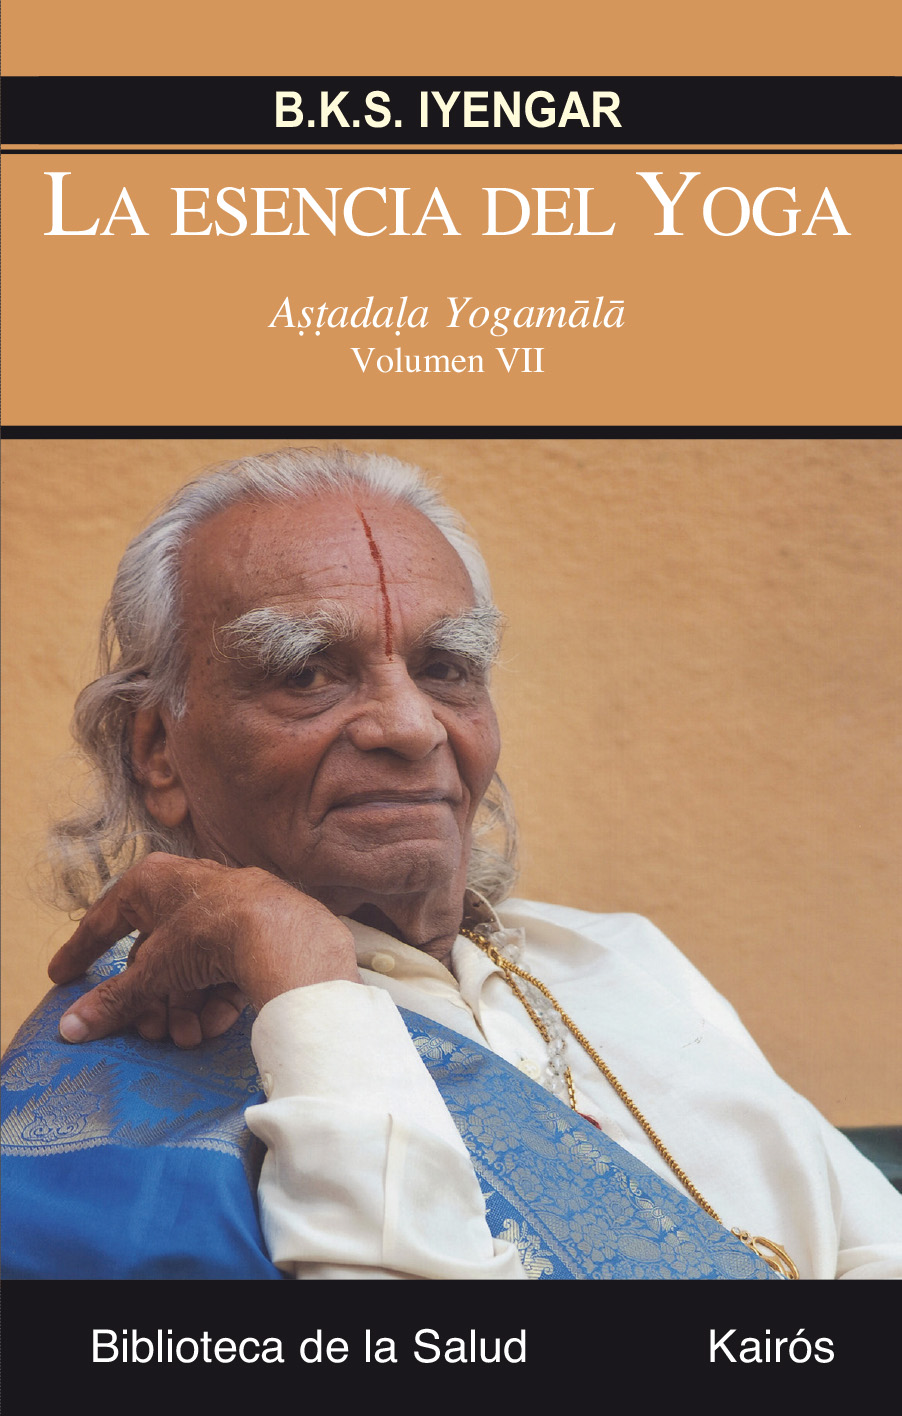 La esencia del Yoga VII : Astadala Yogamala